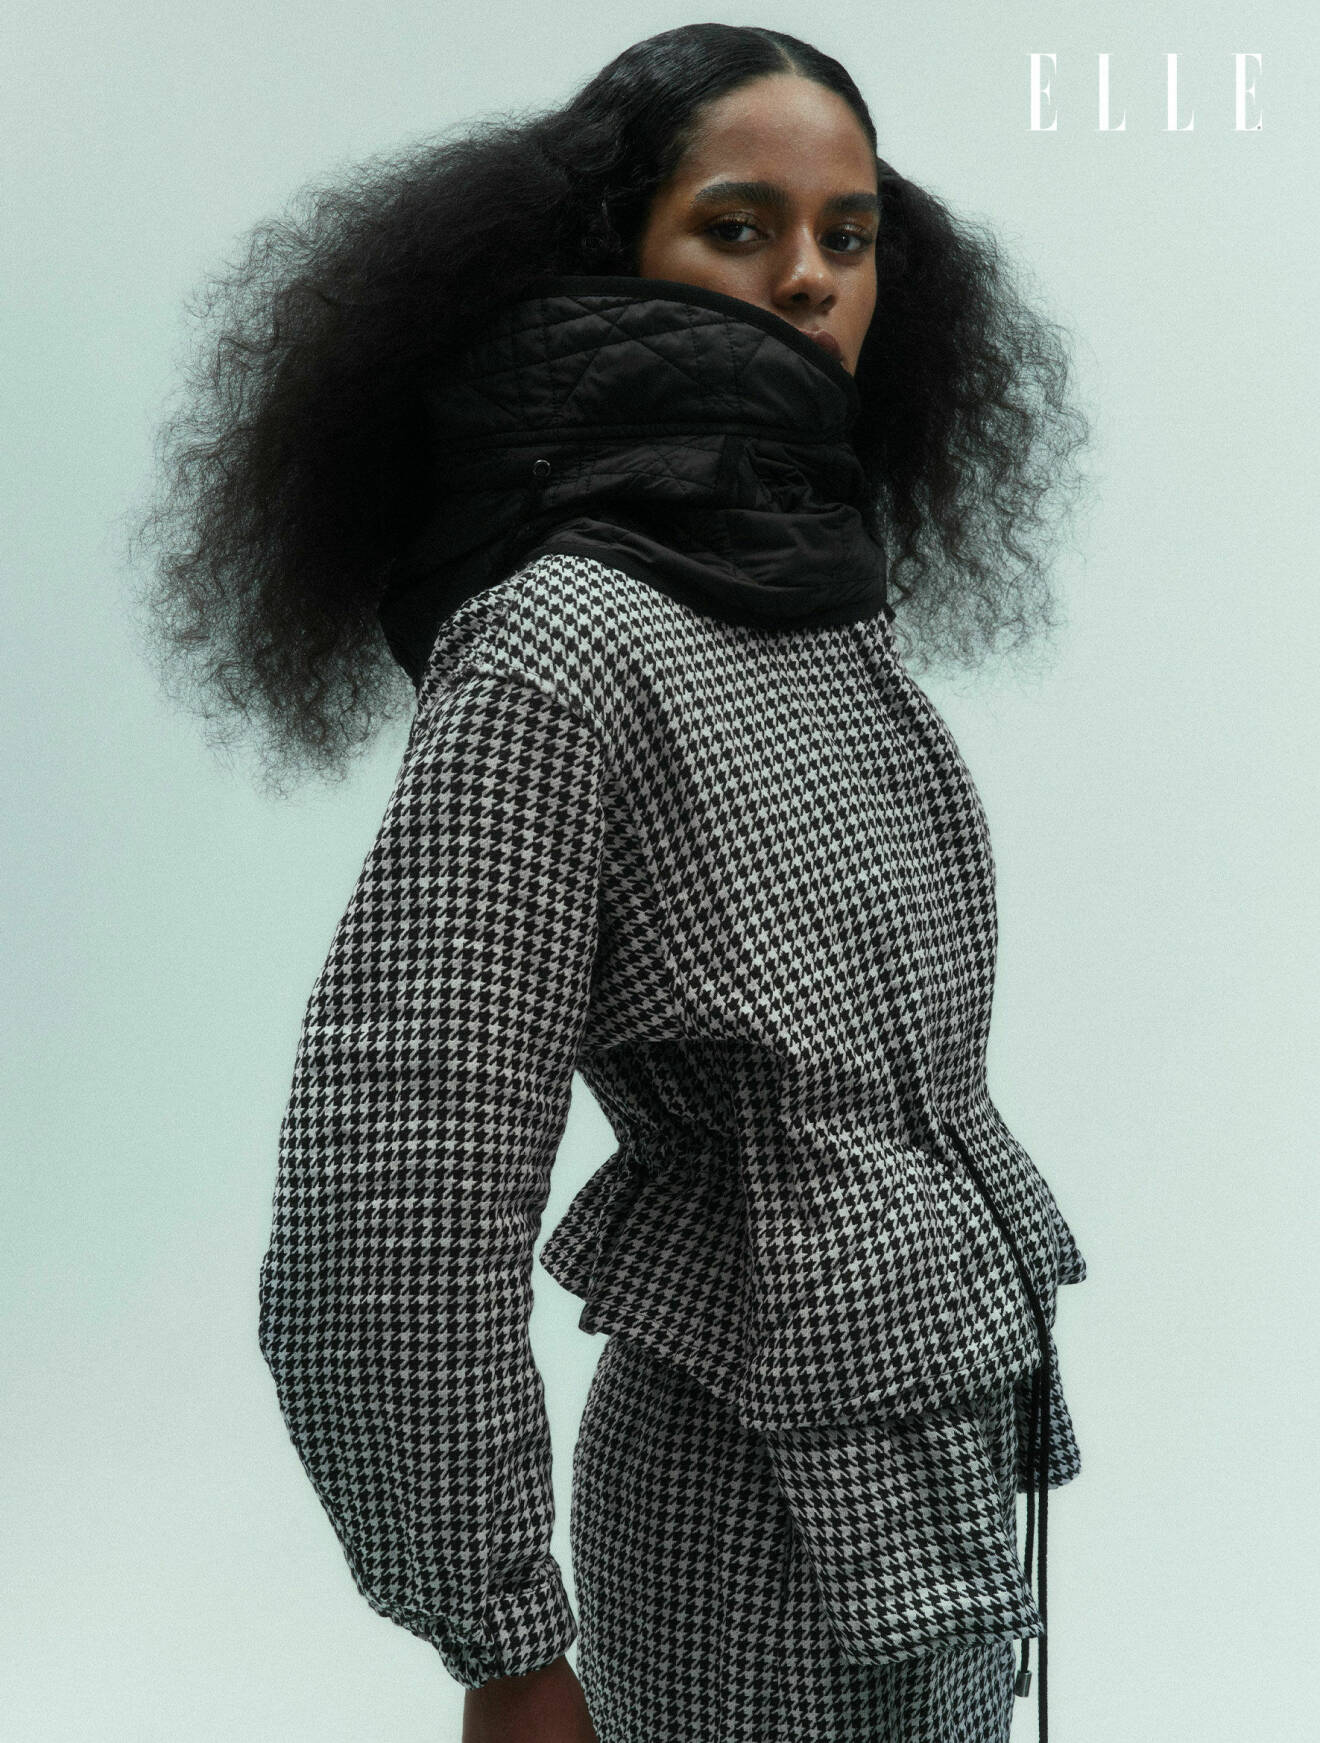 Modellen är klädd i matchande jacka och kjol med en svart löstagbar krage, allt från Christian Dior